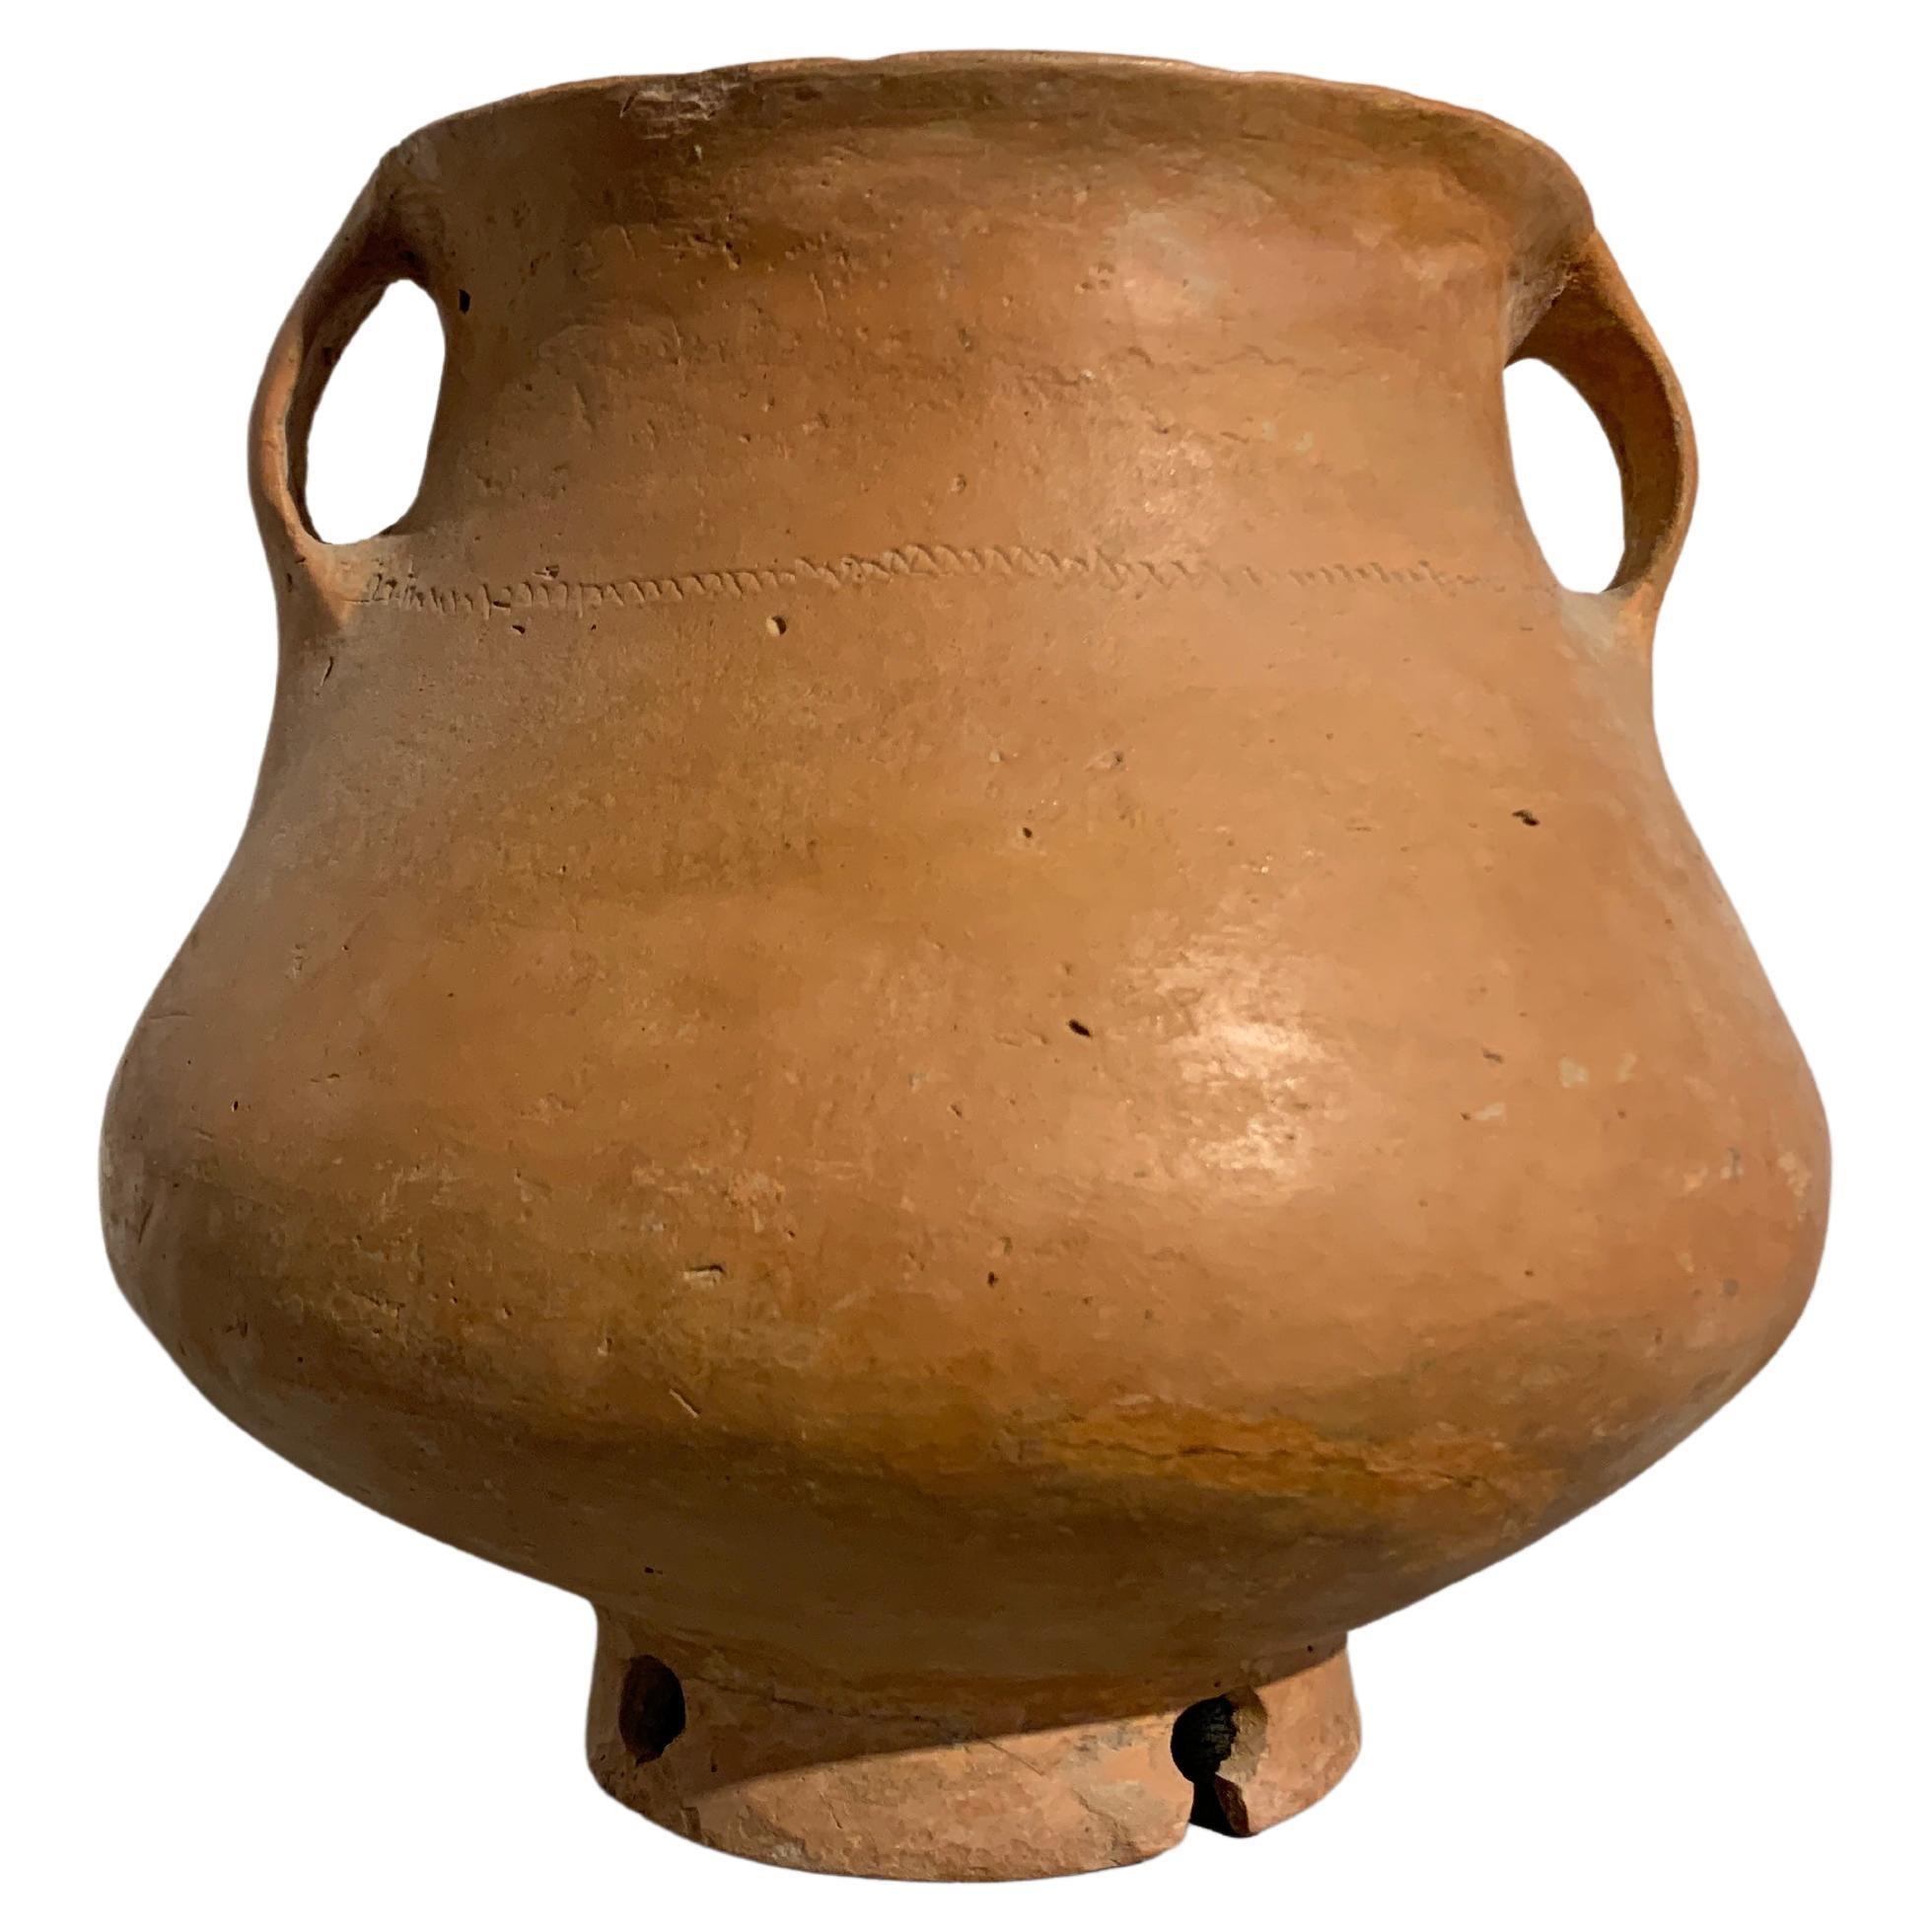 Vase en poterie rouge de la culture néolithique chinoise Qijia, 2200 avant J.-C. - 1600 après J.-C., Chine